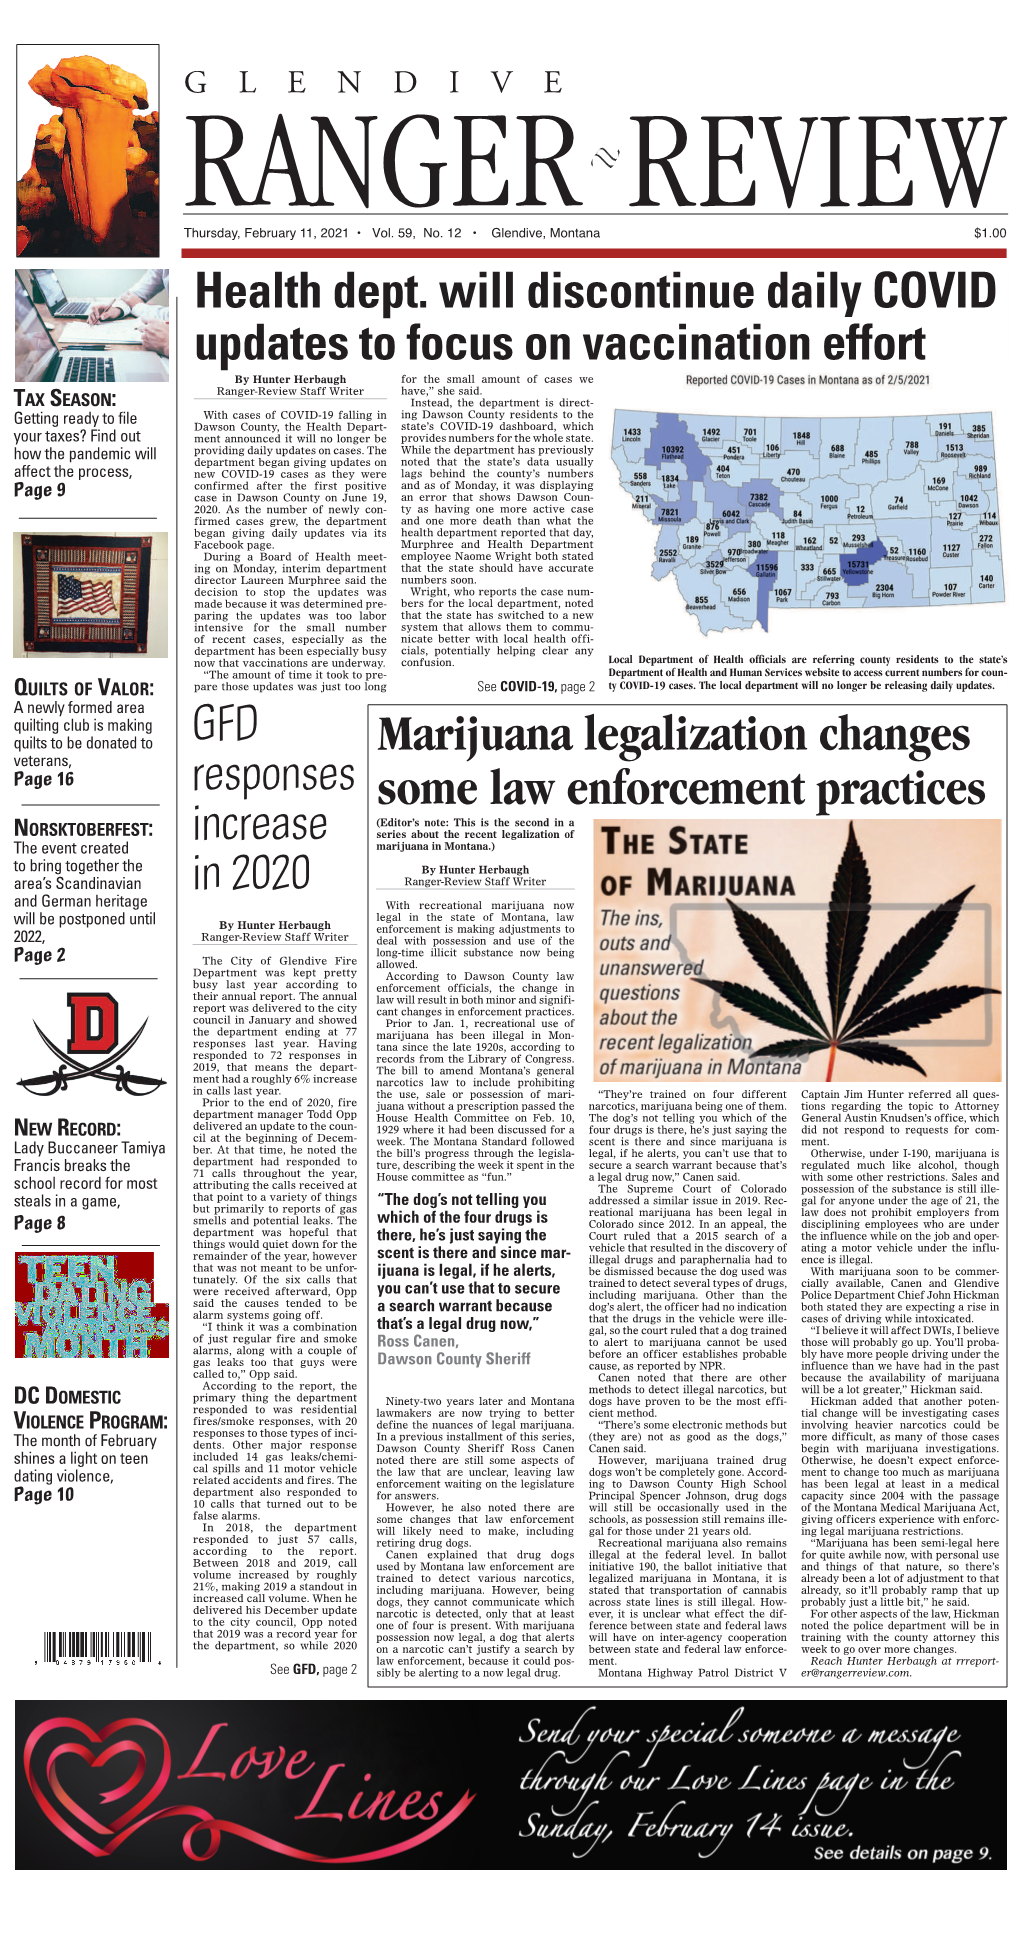 Marijuana Legalization Changes Some Law Enforcement Practices